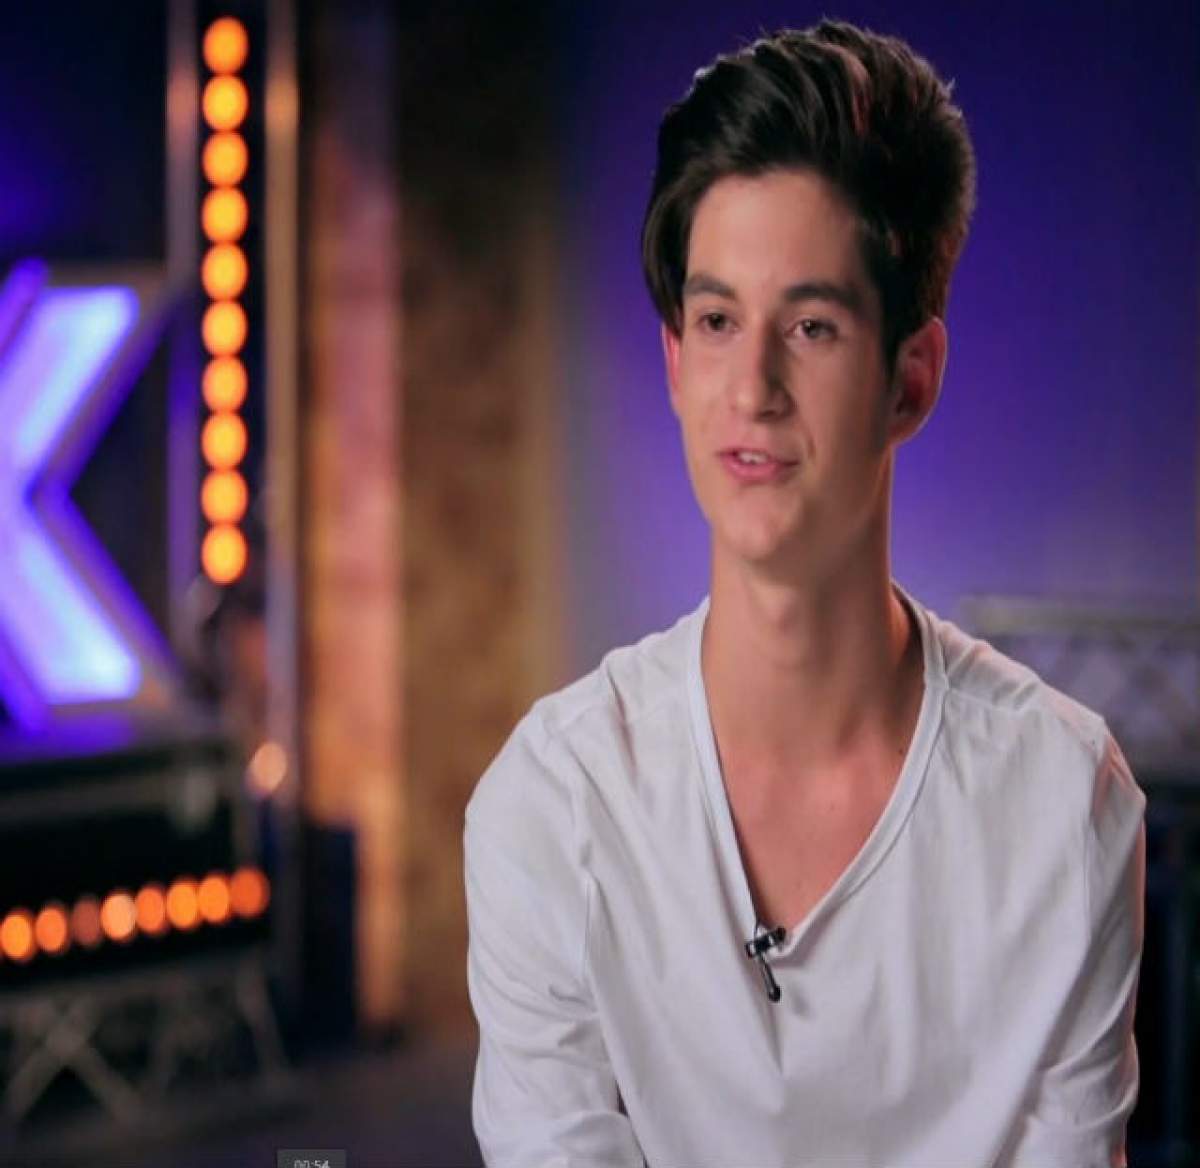 VIDEO / Andrei, concurentul de la "X Factor" care a băgat râca între juraţi: "Eşti un băieţel traumatizat?"